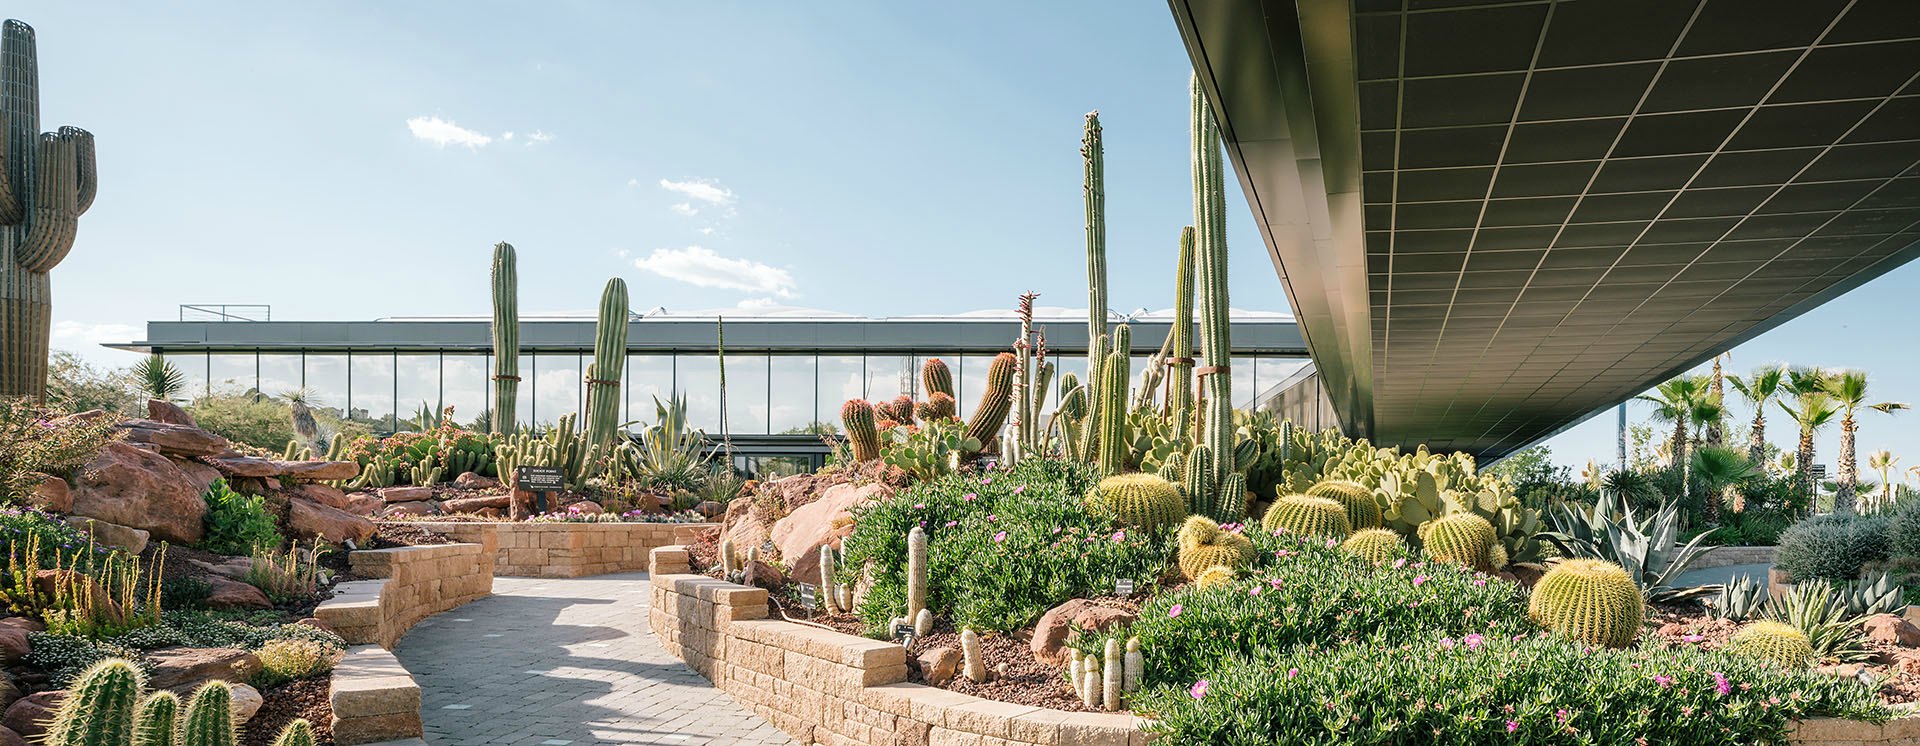 El jardín de cactus más grande de Europa está en Madrid 7